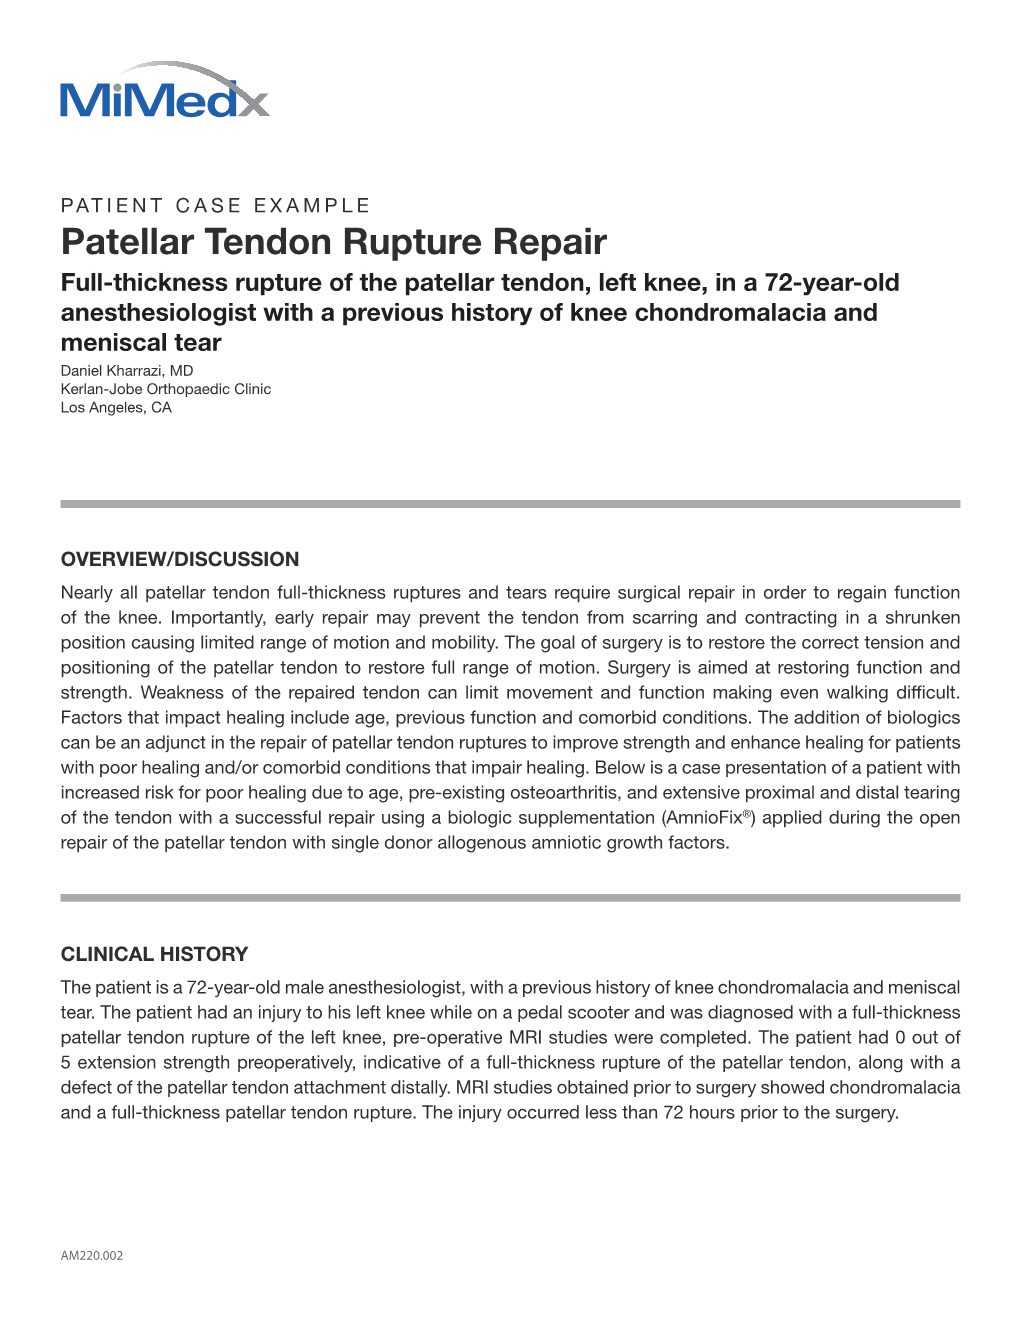 Patellar Tendon Rupture Repair